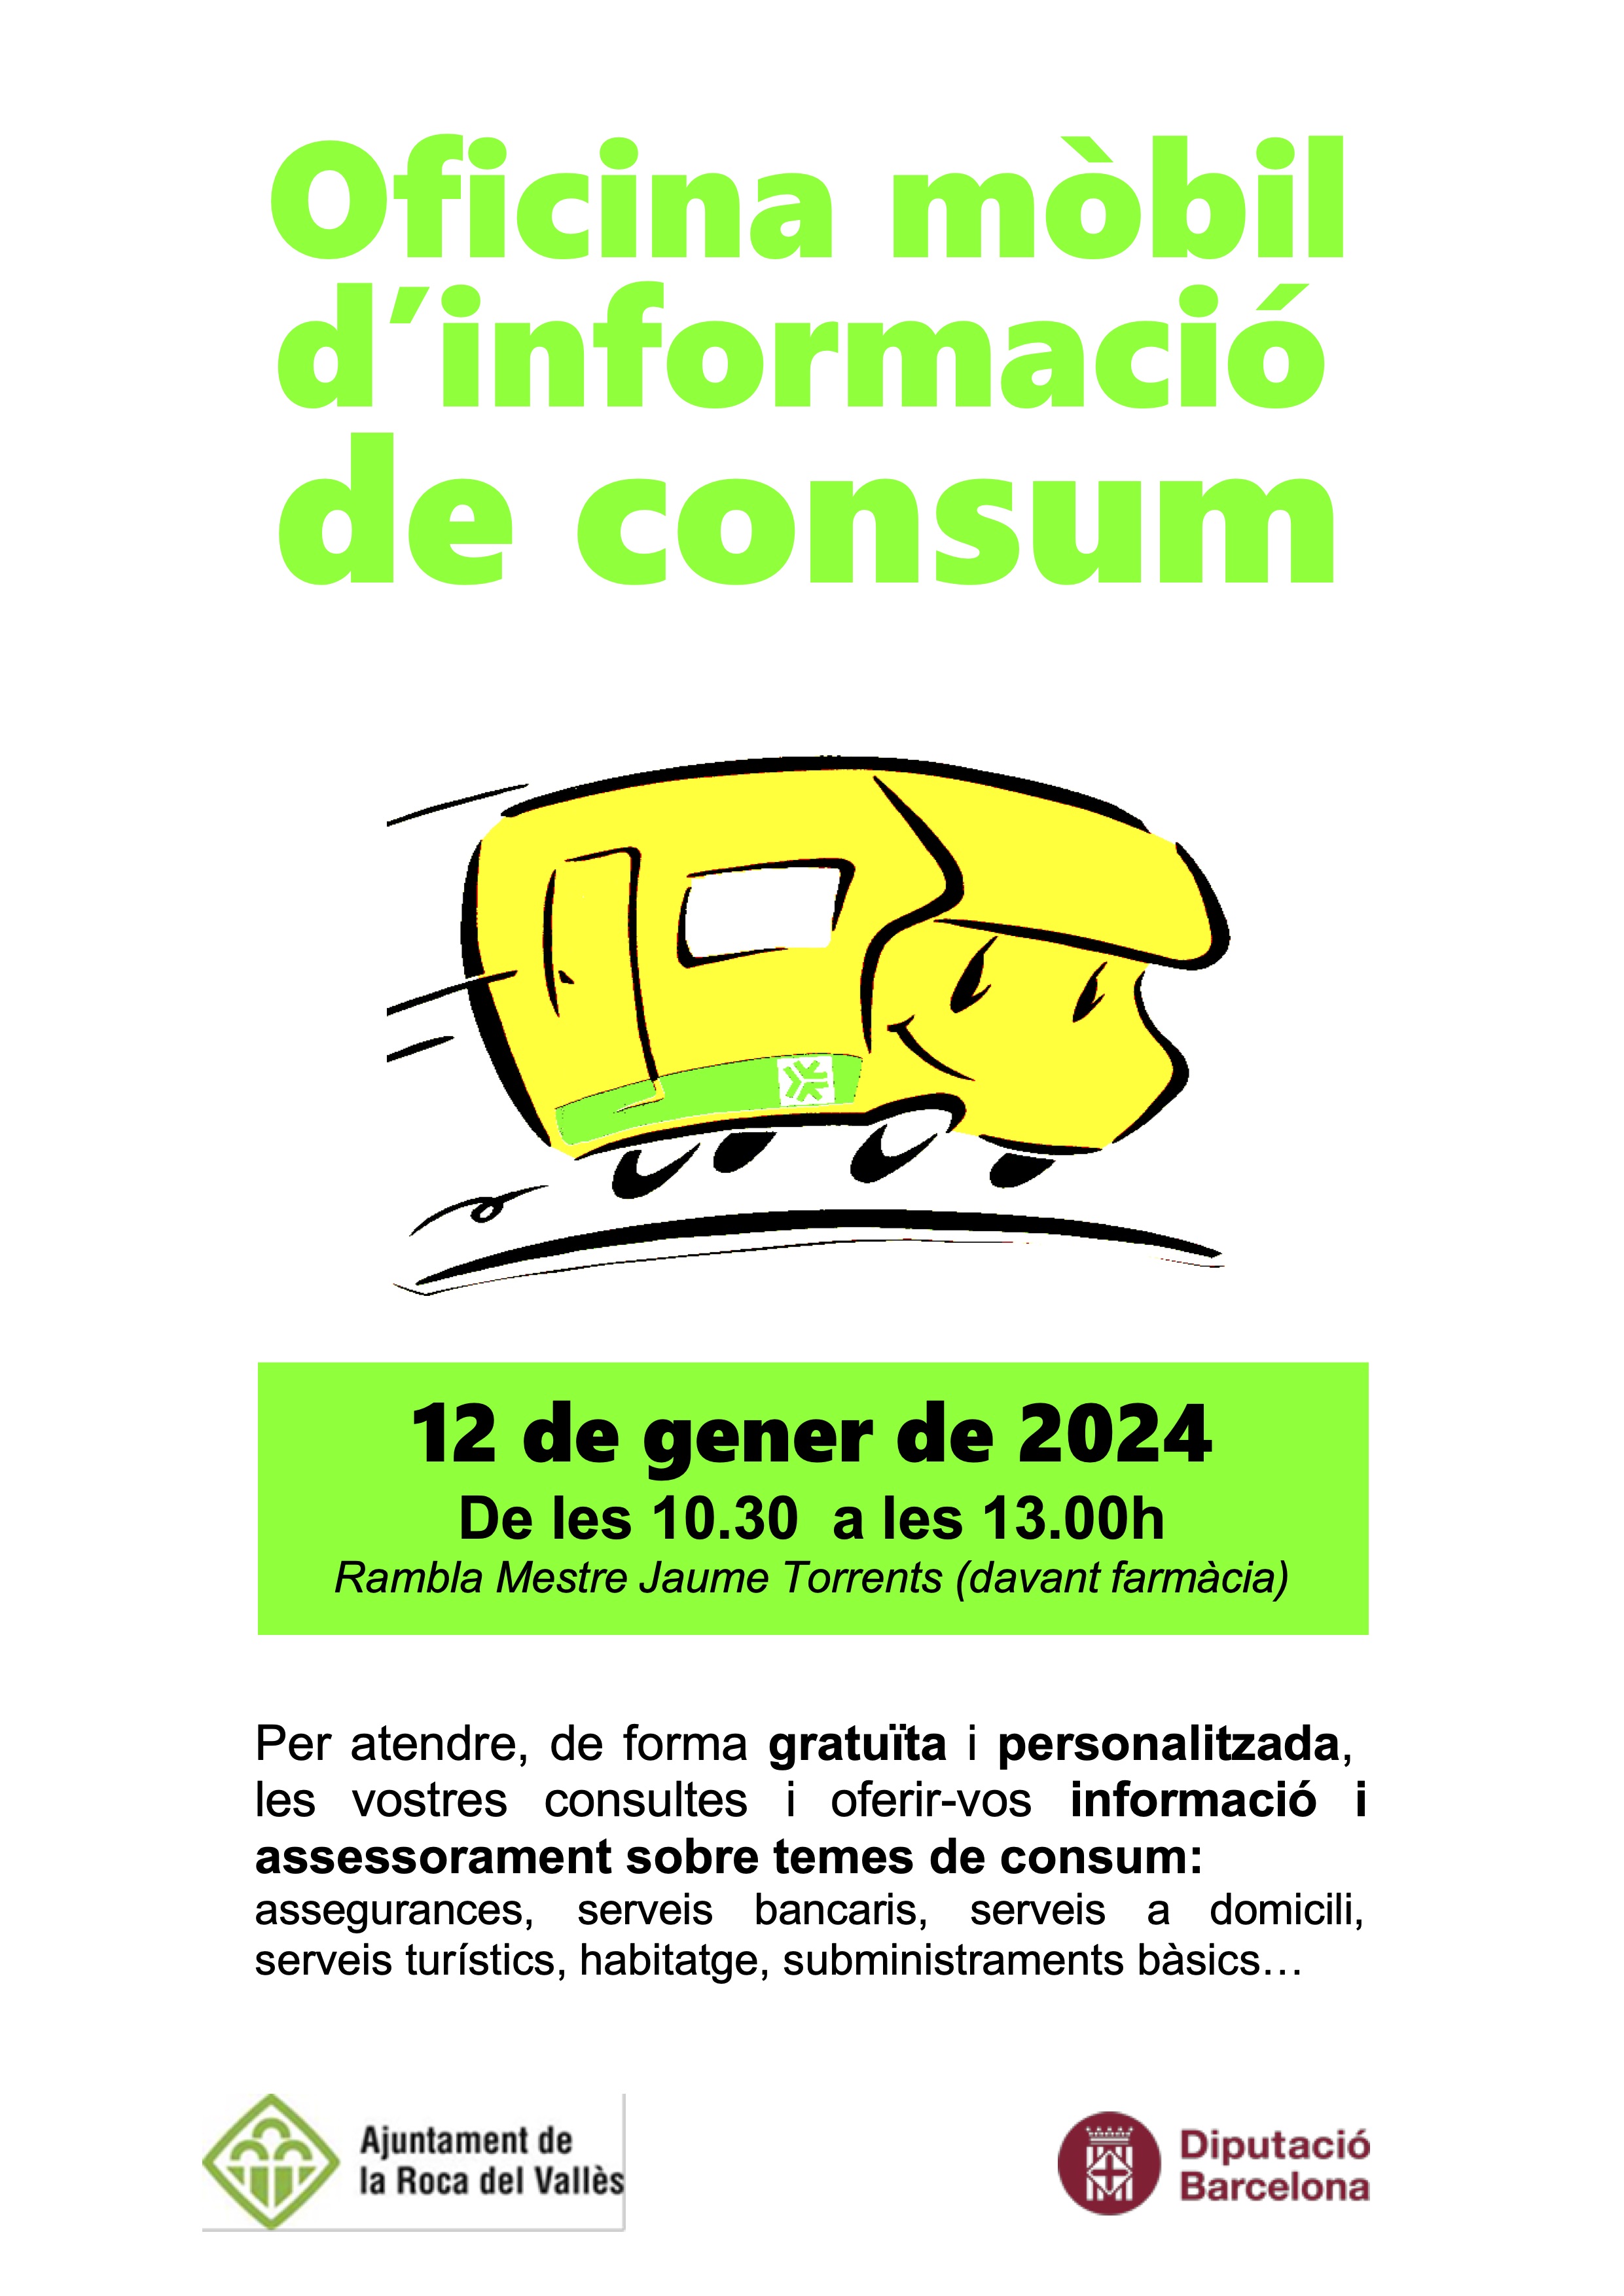 L'Oficina Mòbil d'Informació al Consumidor atendrà el 12 de gener